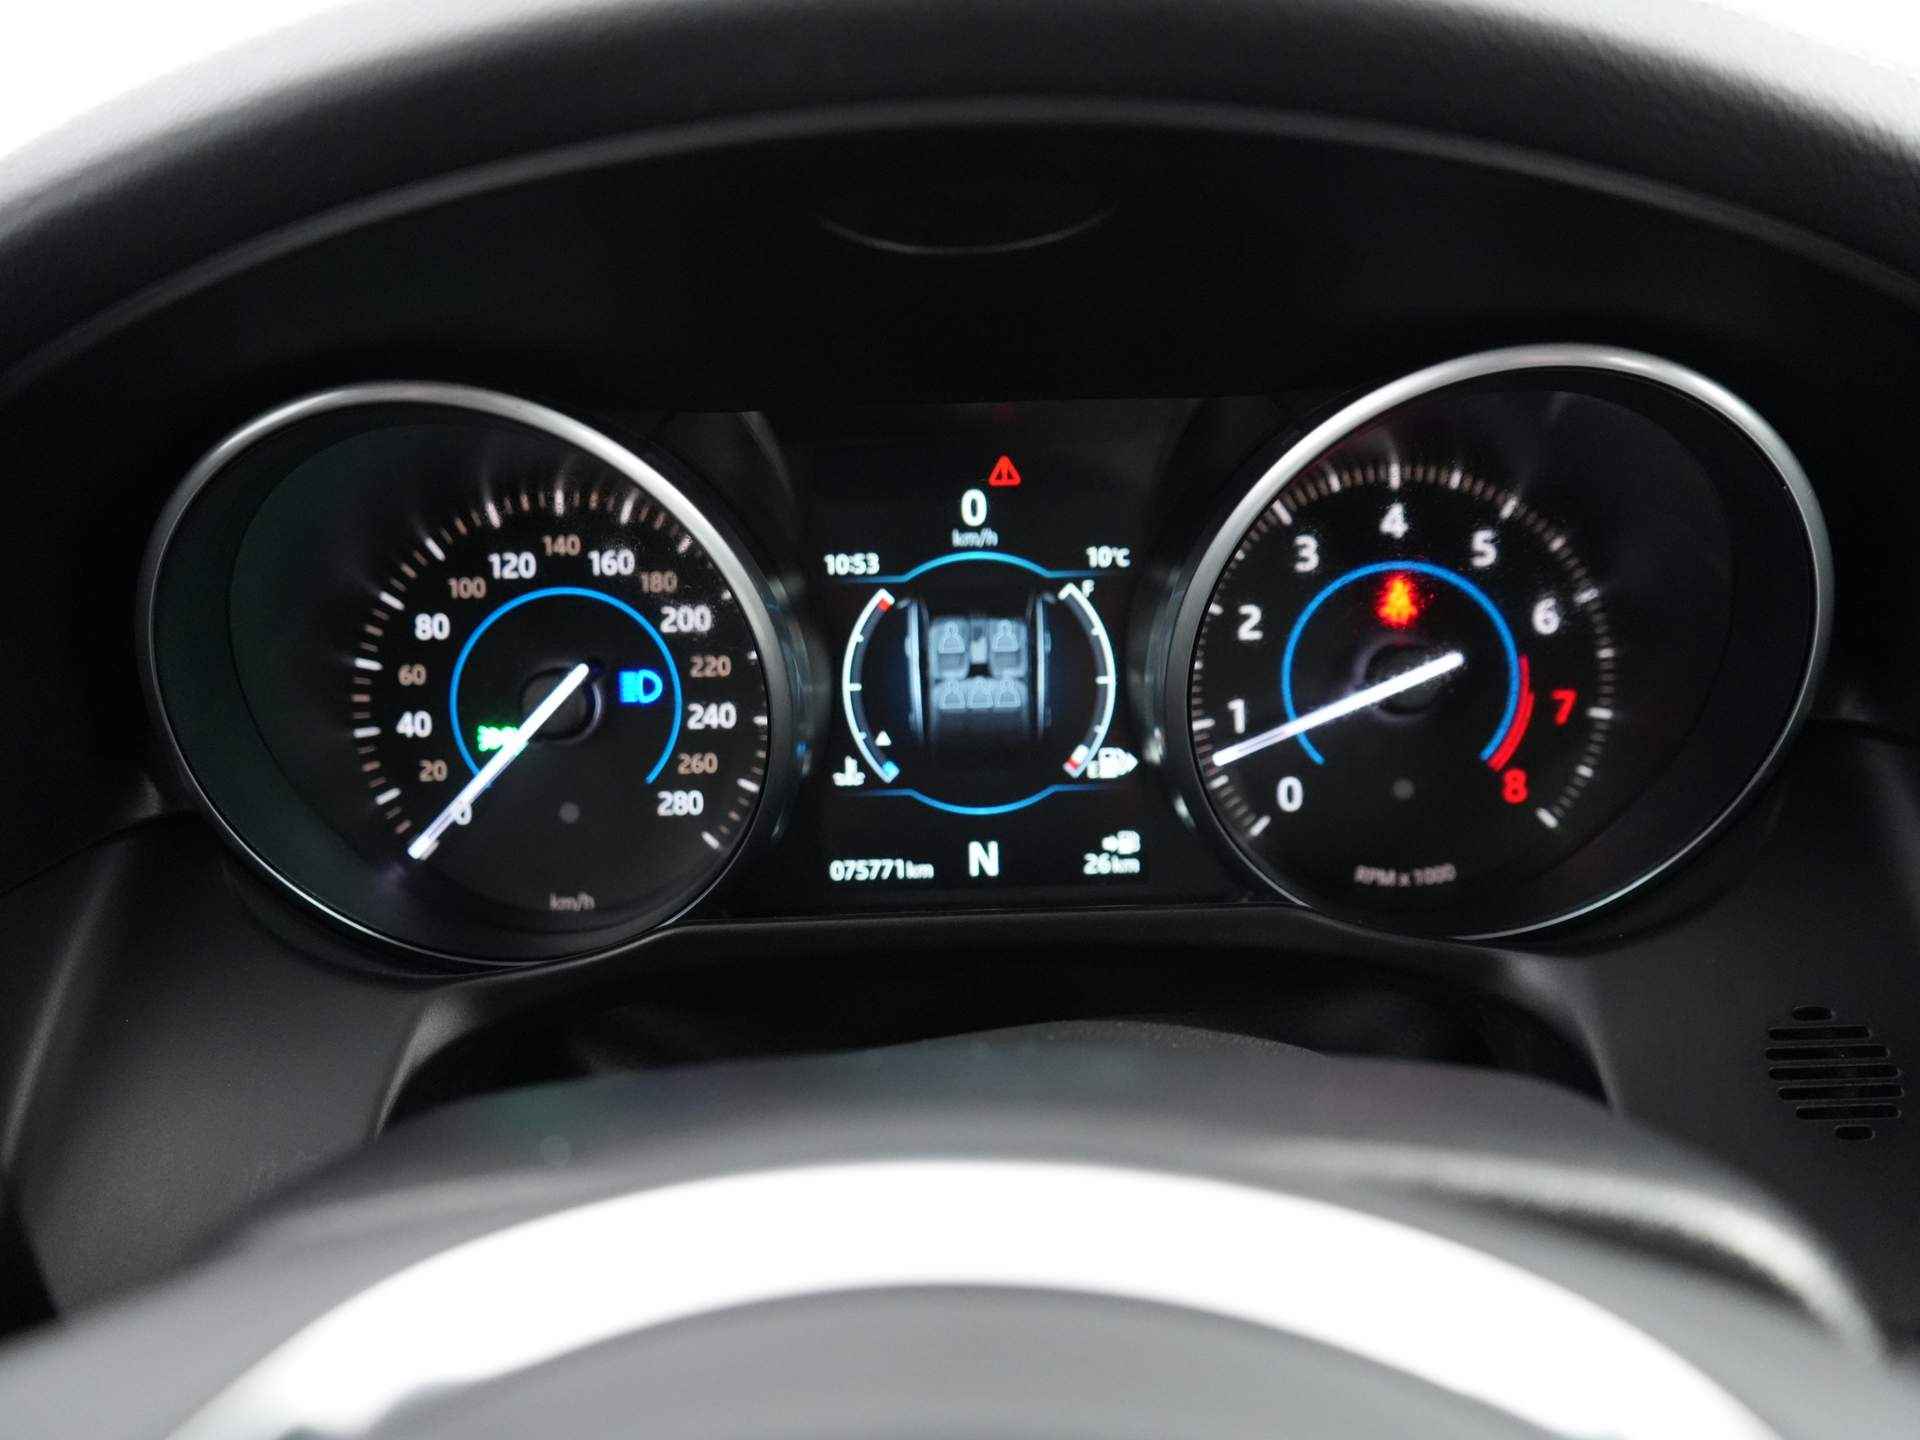 Jaguar XF 3.0 S AWD | Navigatie | Camera | Sensoren V+A | Panorama dak - 8/31